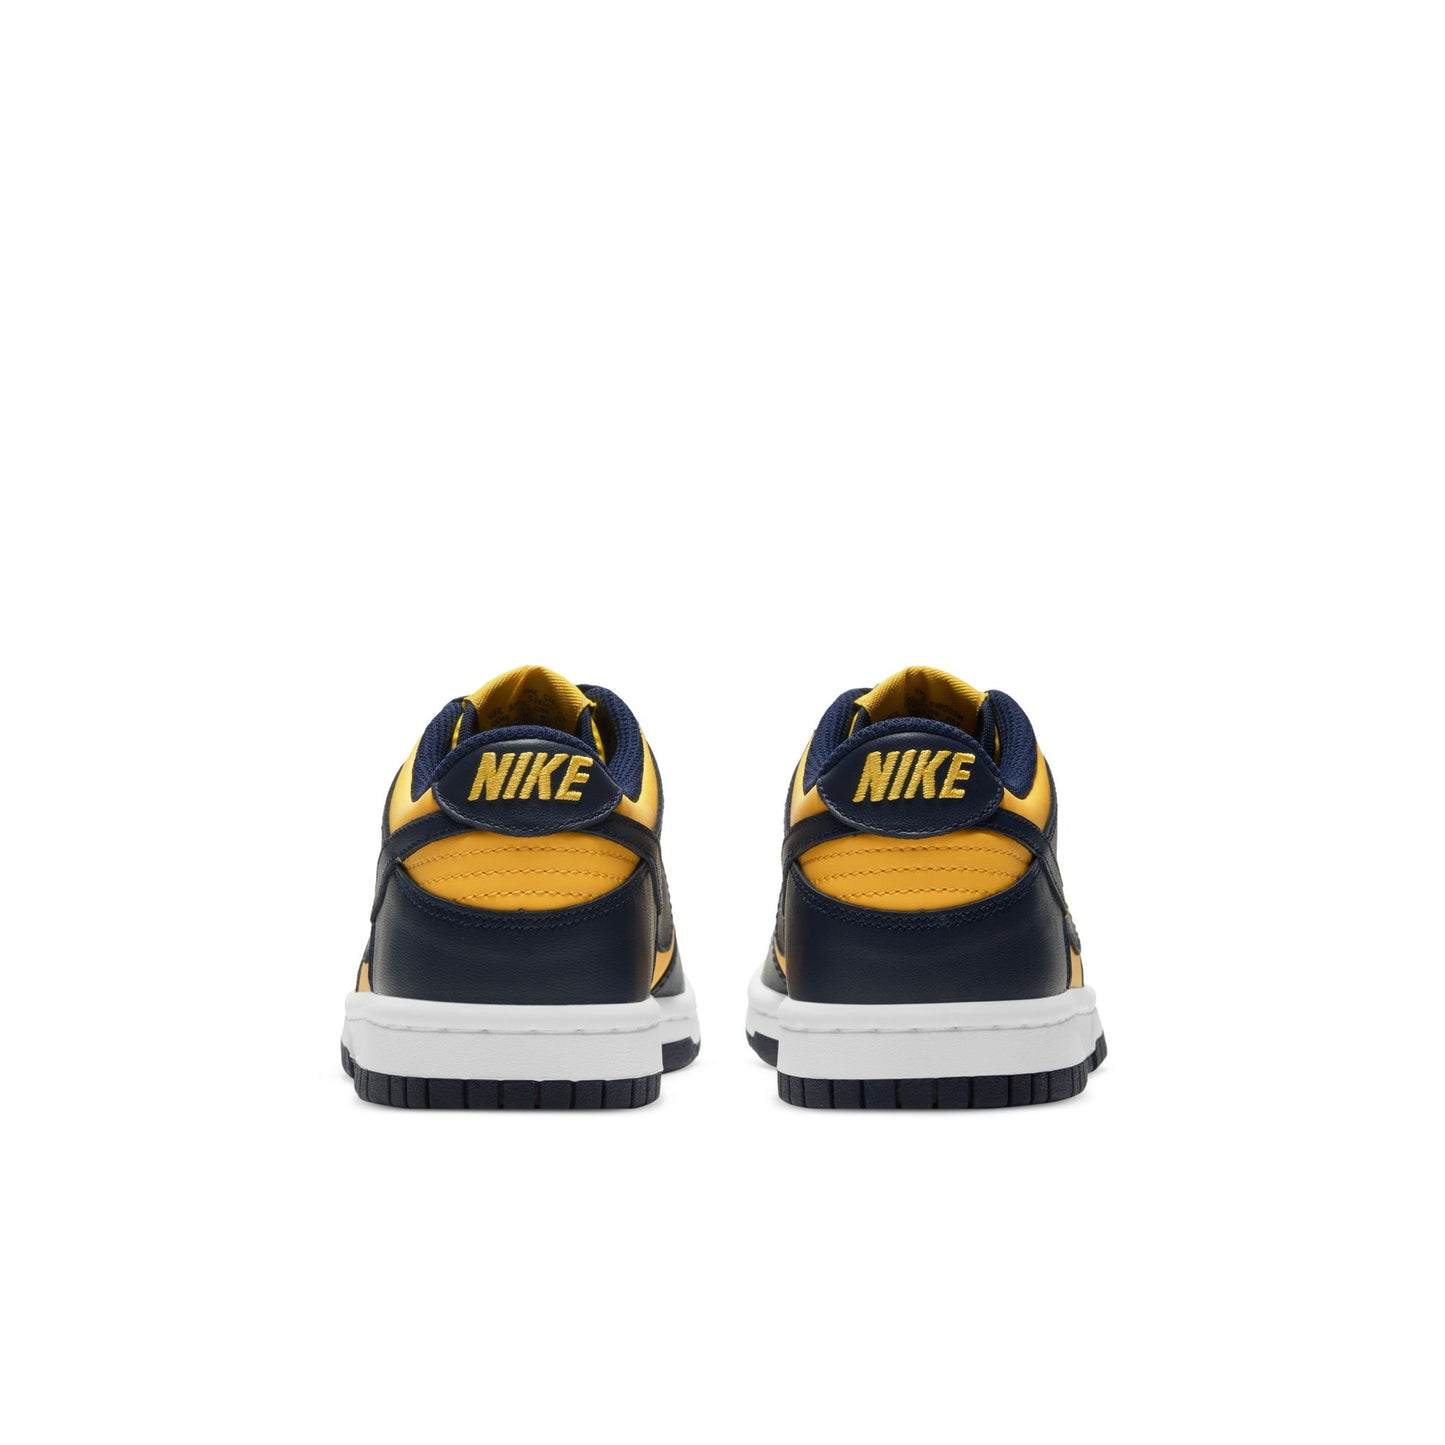 Nike Dunk Low "Michigan" (GS) - CW1590-700